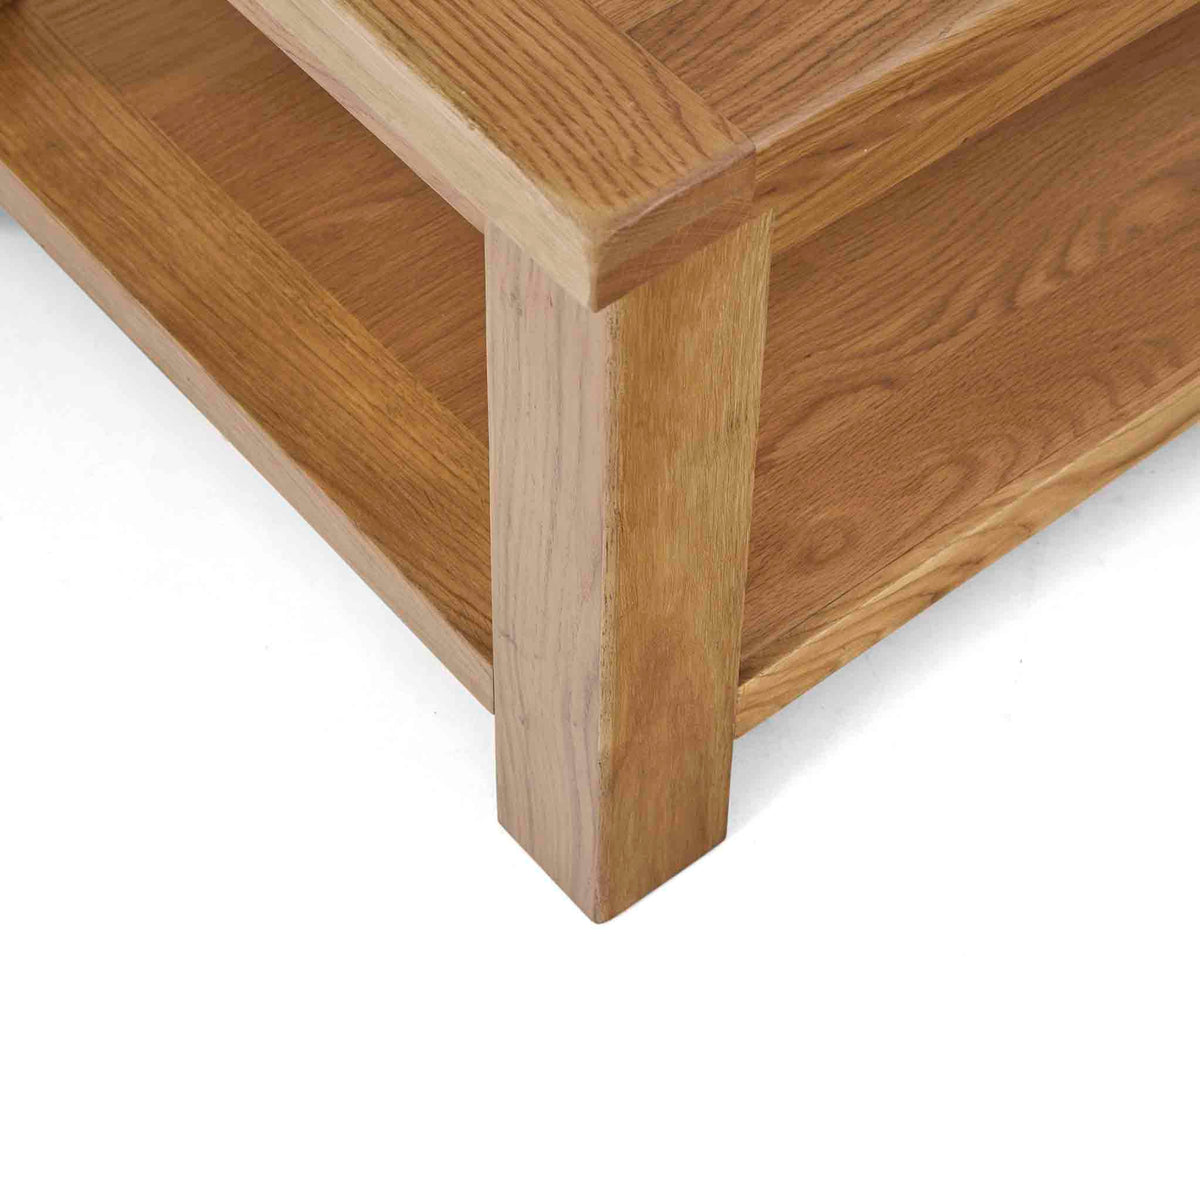 Zelah Oak Coffee Table - Looking down on corner of table